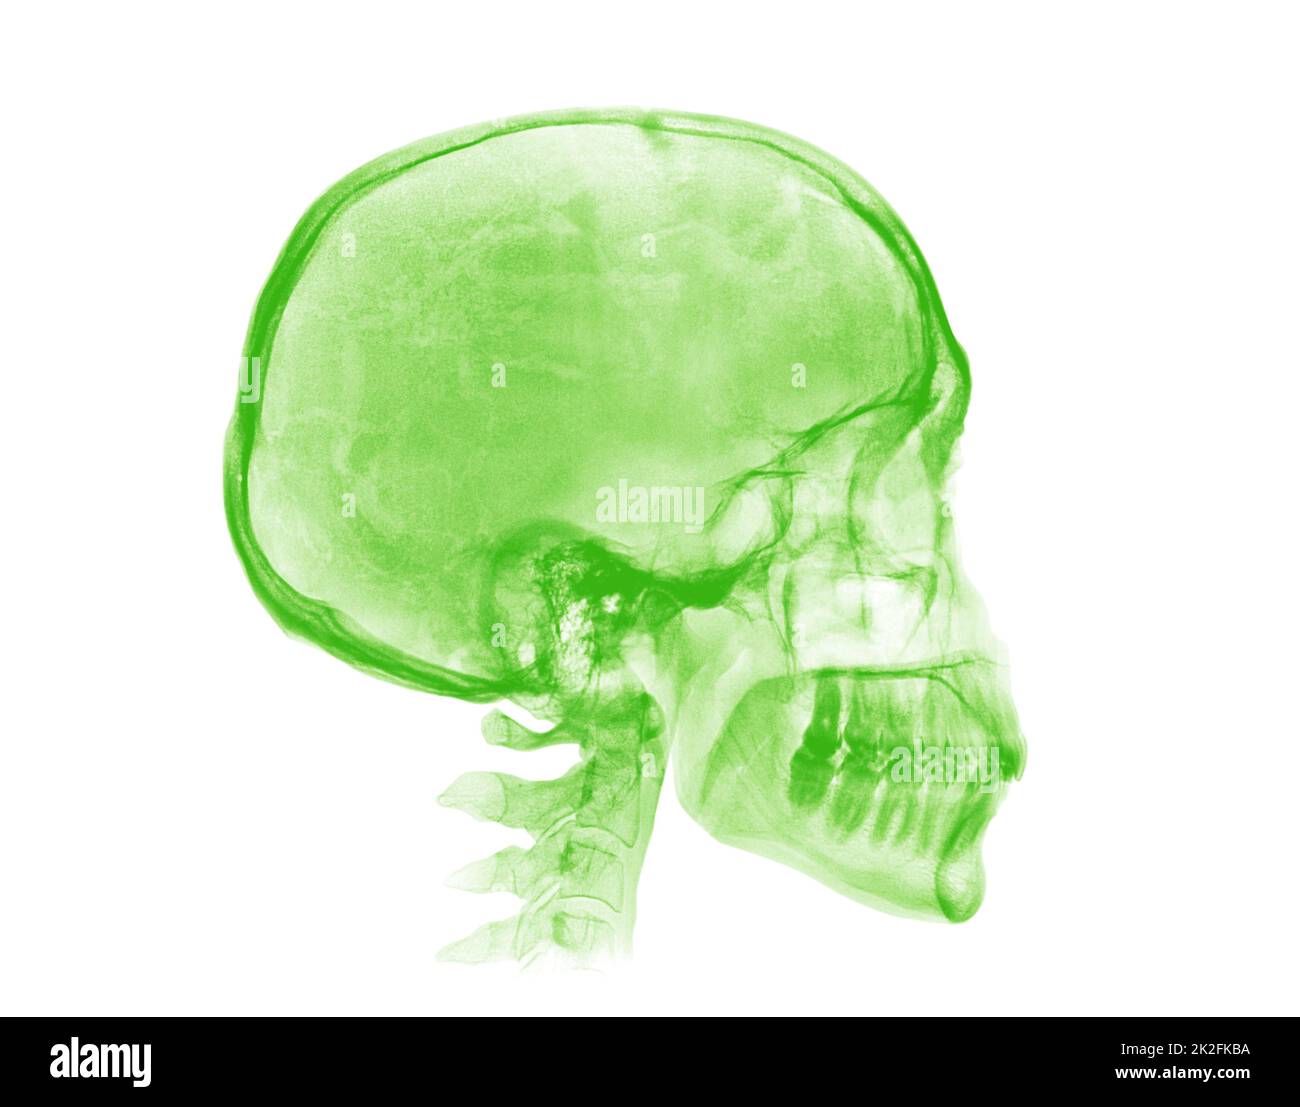 Cranio umano. Immagine radiografica verde su sfondo bianco Foto Stock